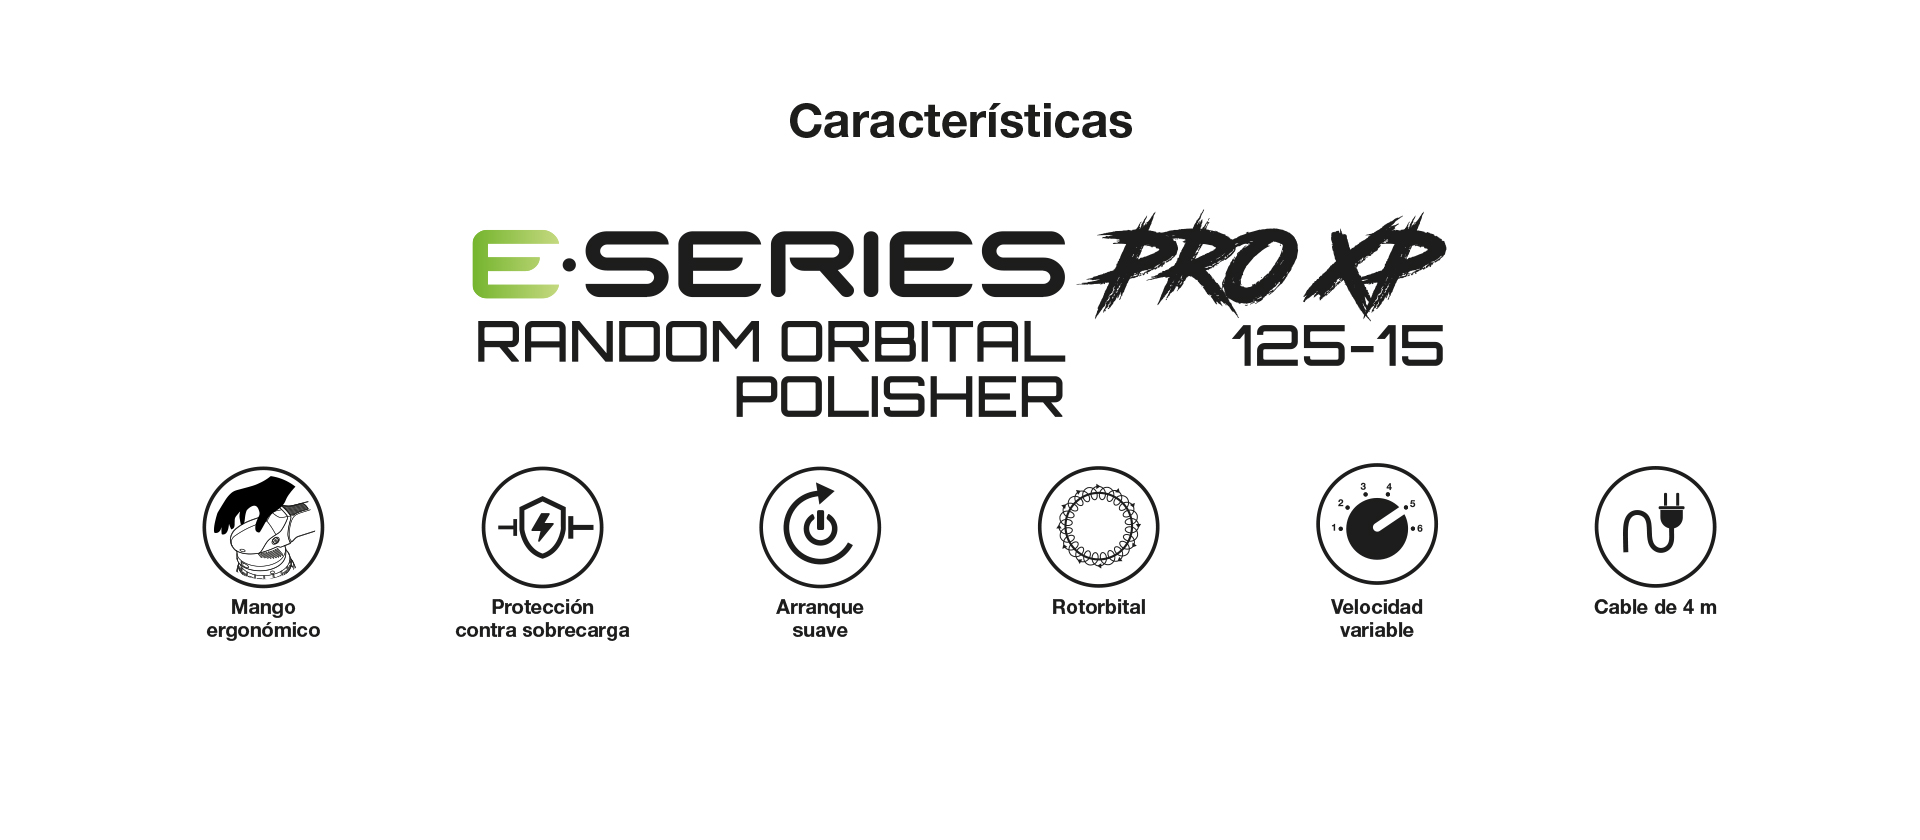 Pulidora Rotorbital Características e Ventajas